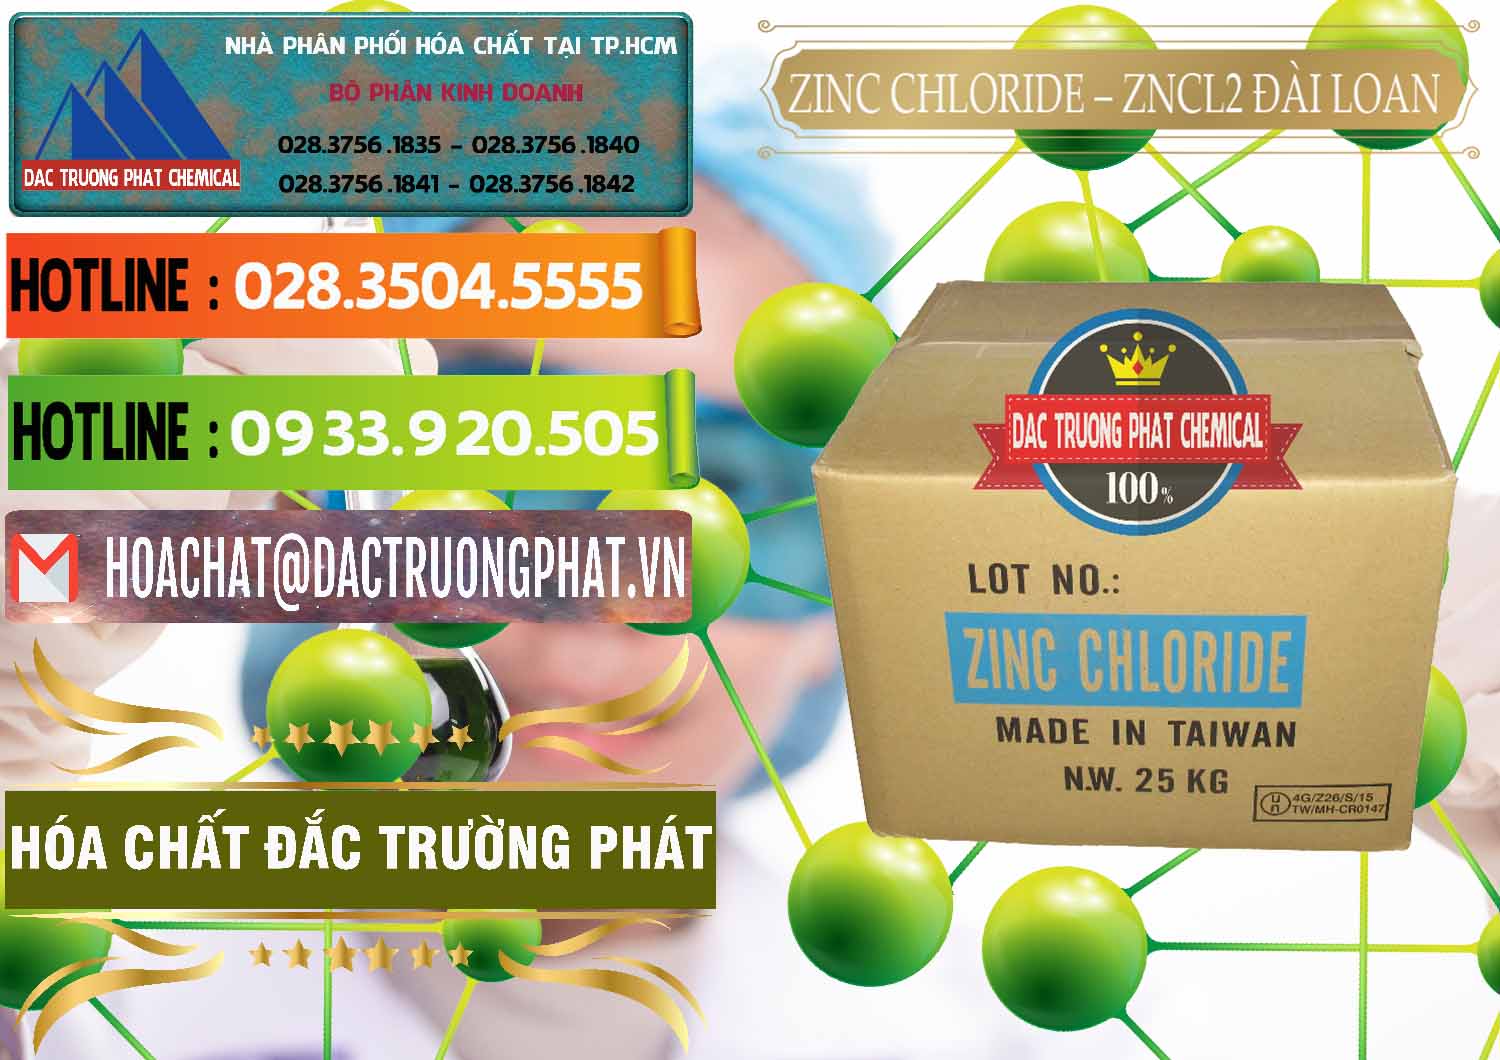 Cty chuyên bán và phân phối Zinc Chloride - ZNCL2 96% Đài Loan Taiwan - 0178 - Nơi phân phối _ cung ứng hóa chất tại TP.HCM - cungcaphoachat.com.vn